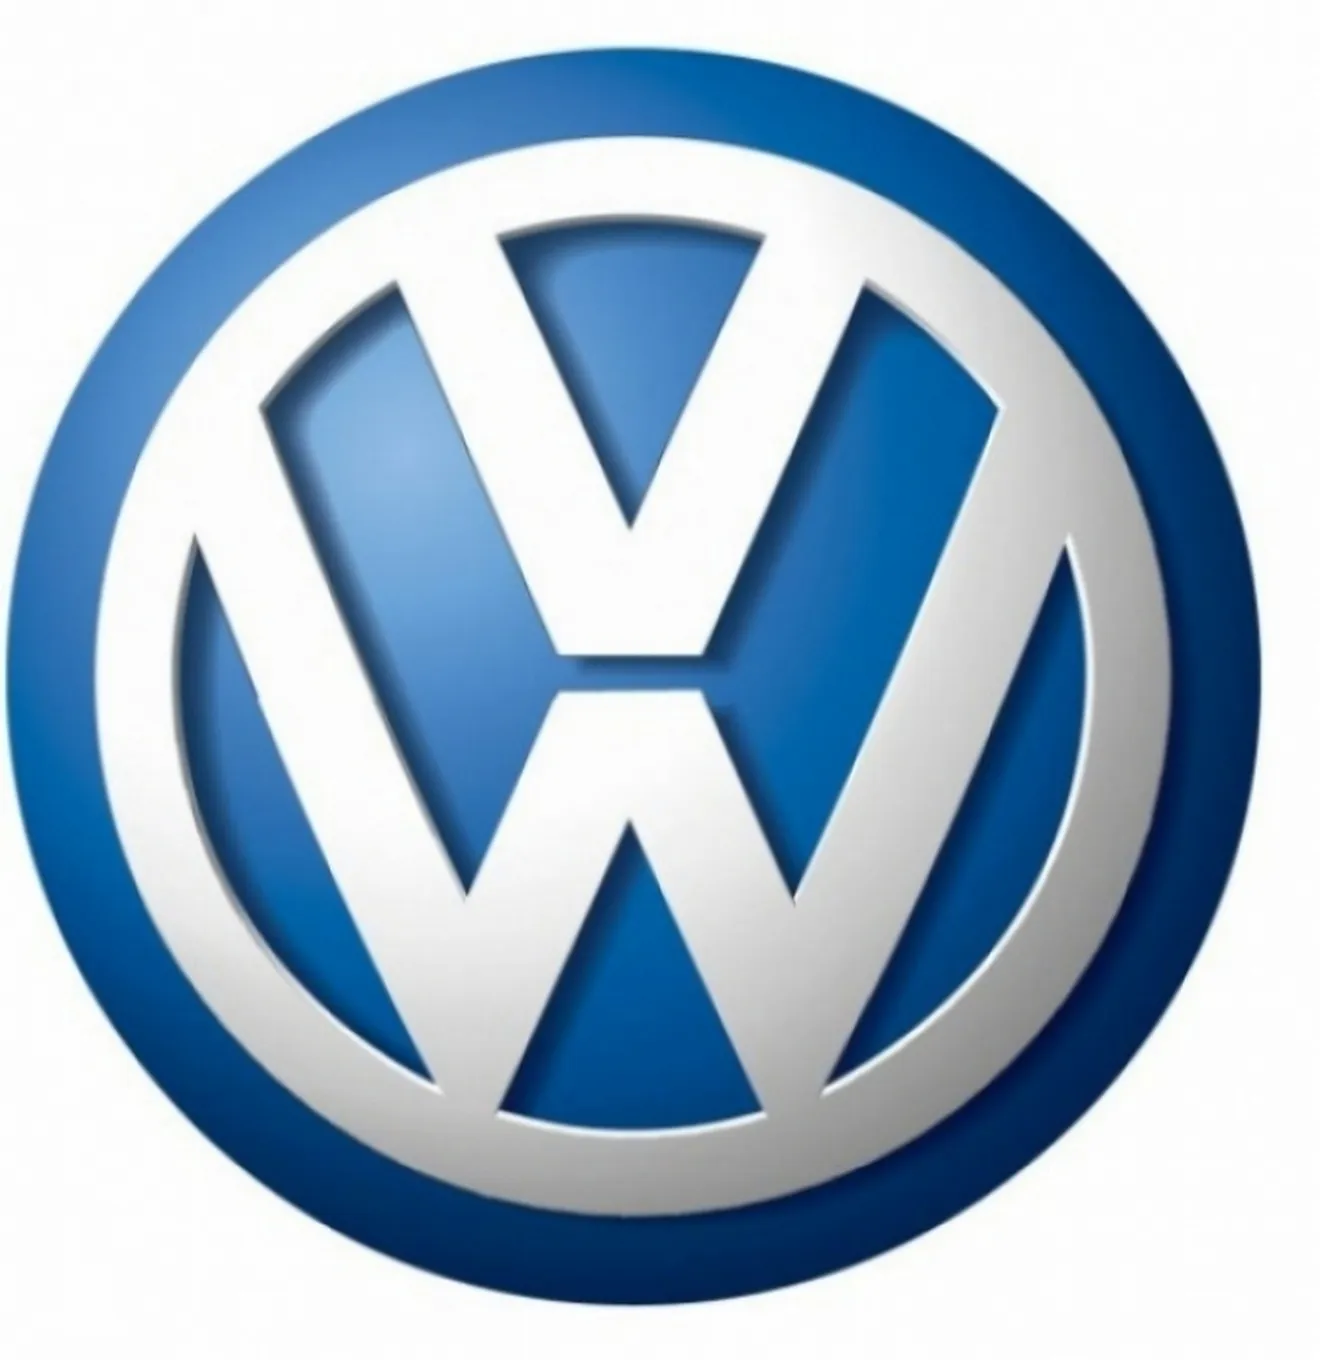 Nueva campaña viral de Volkswagen